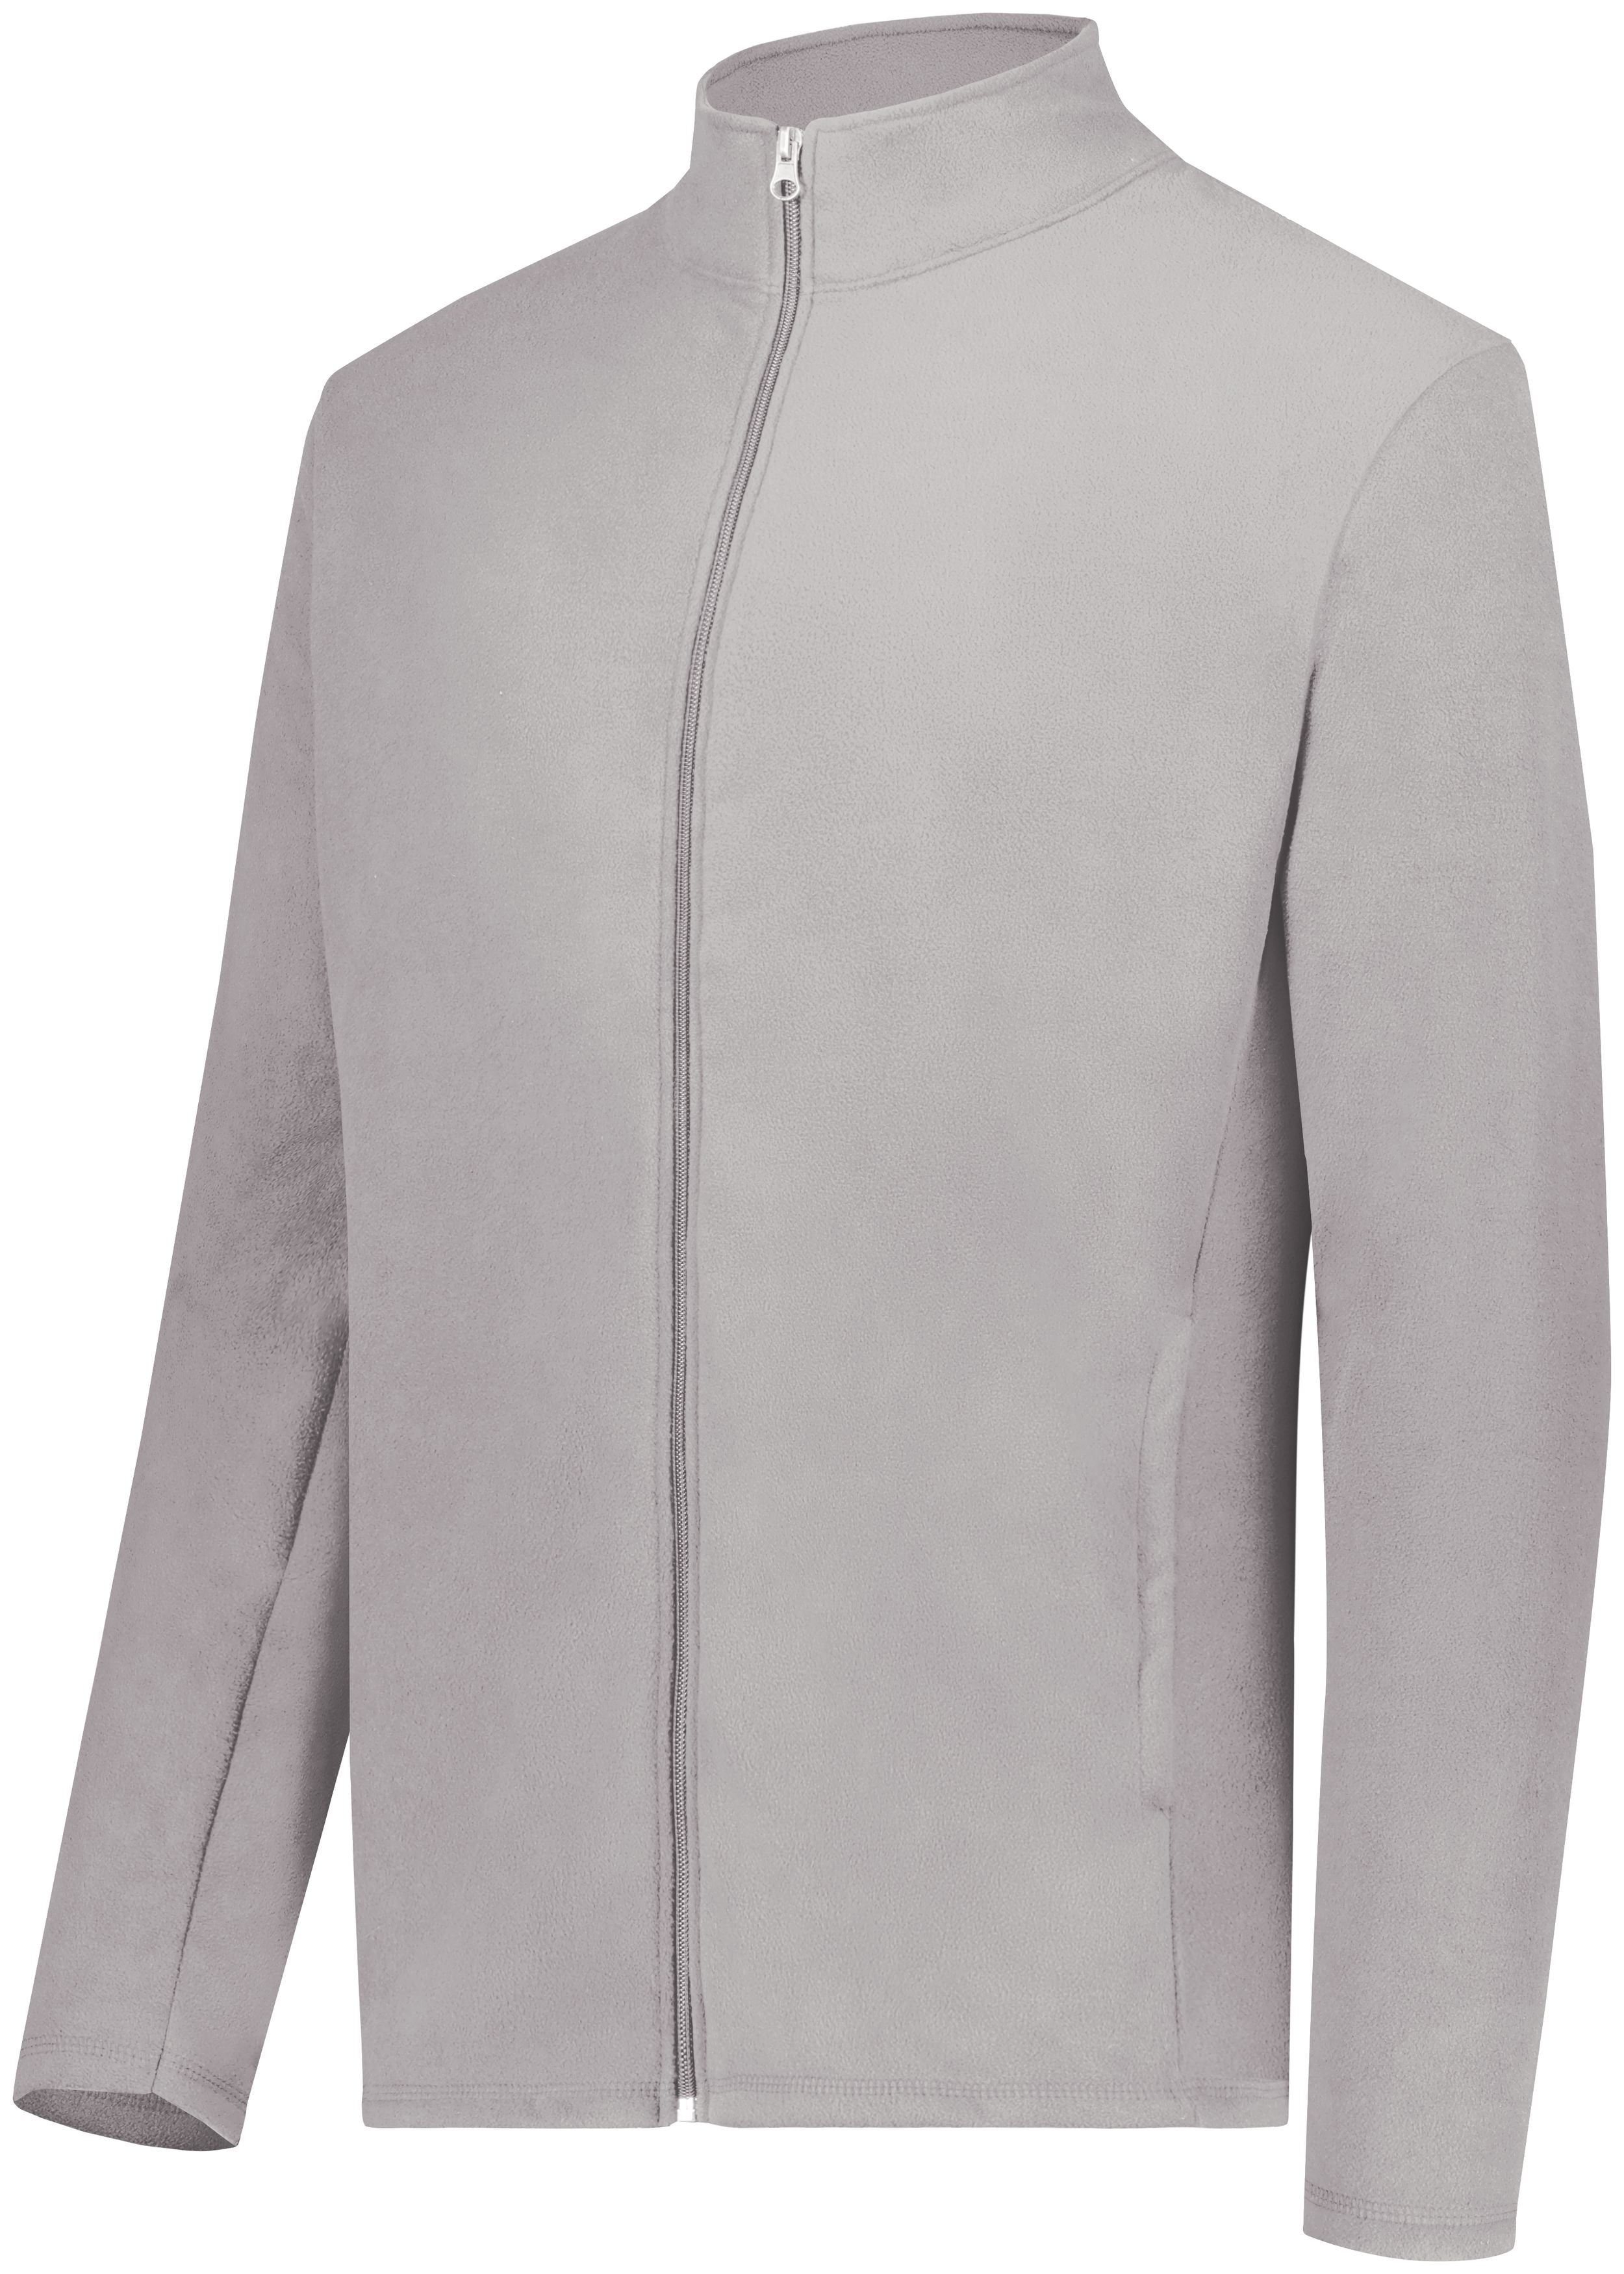 Micro-Lite Fleece Full Zip Jacket 6861